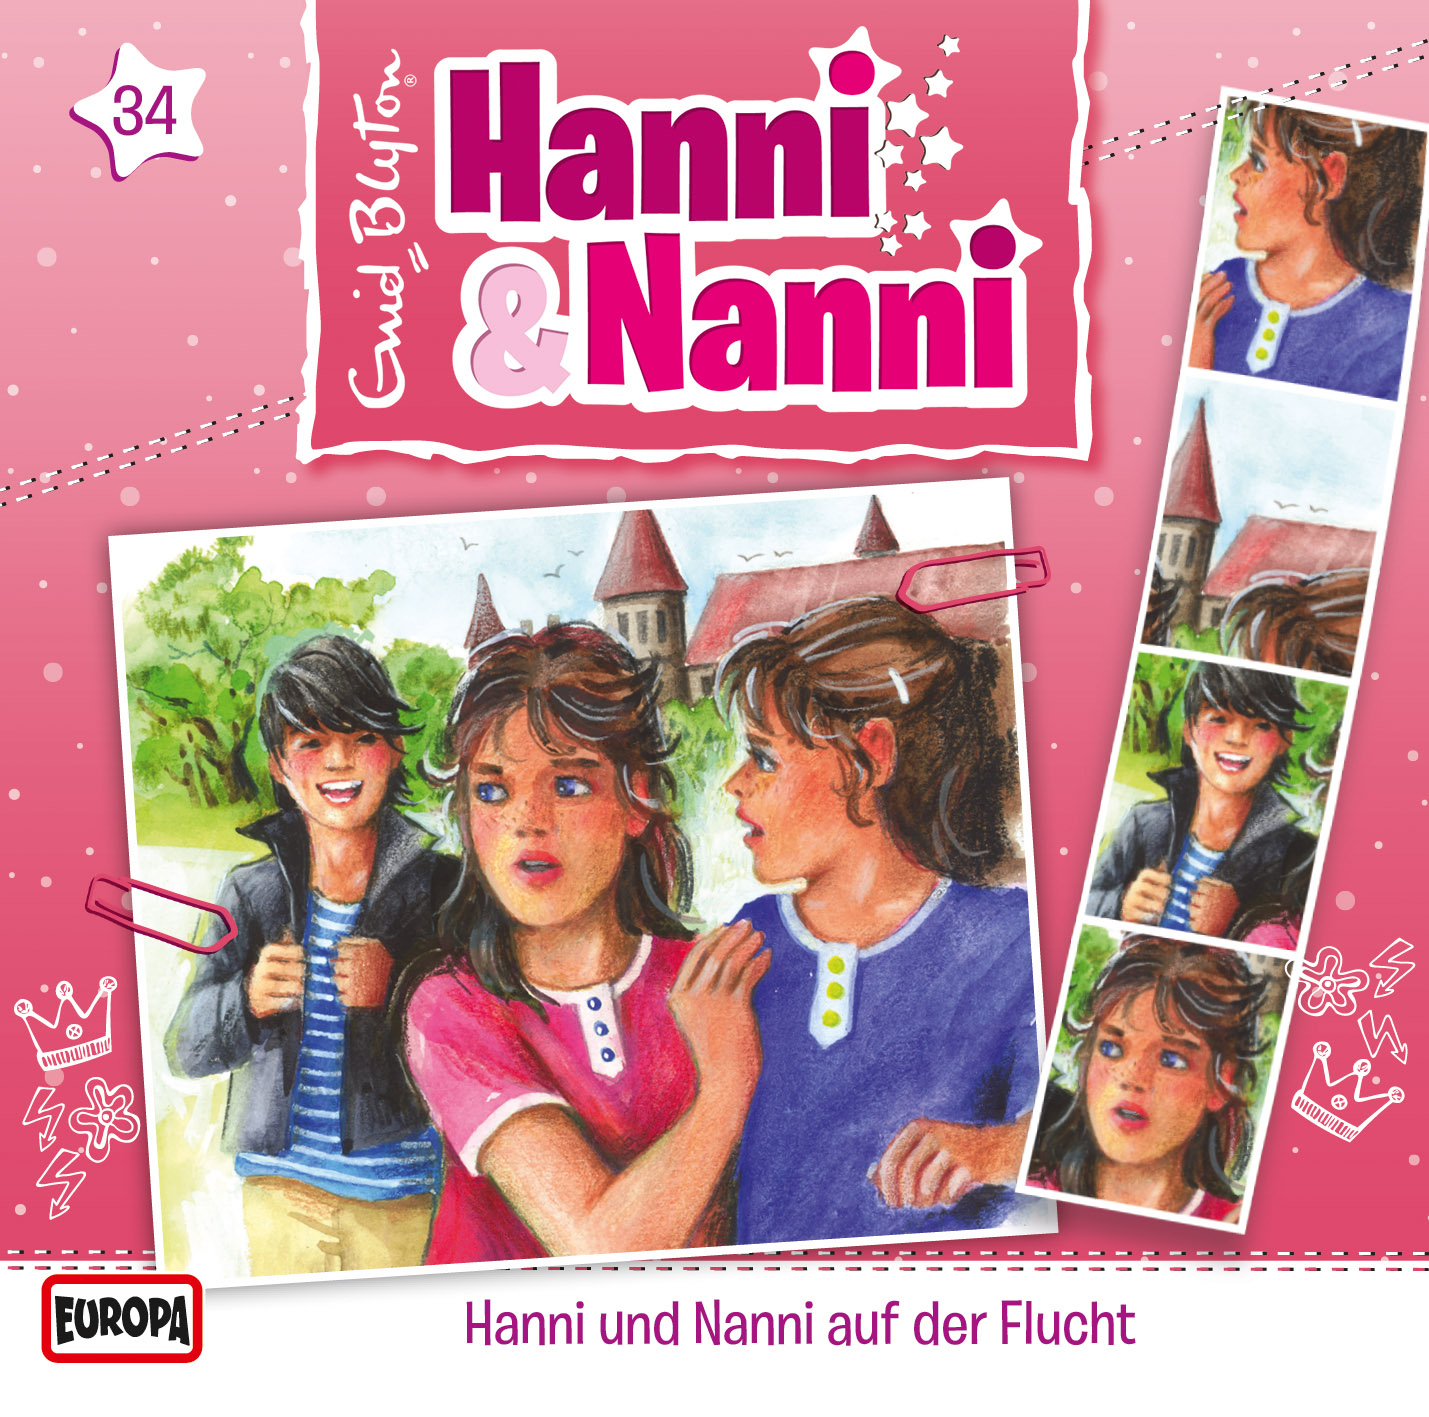 Hanni und Nanni: Hanni & Nanni auf der Flucht